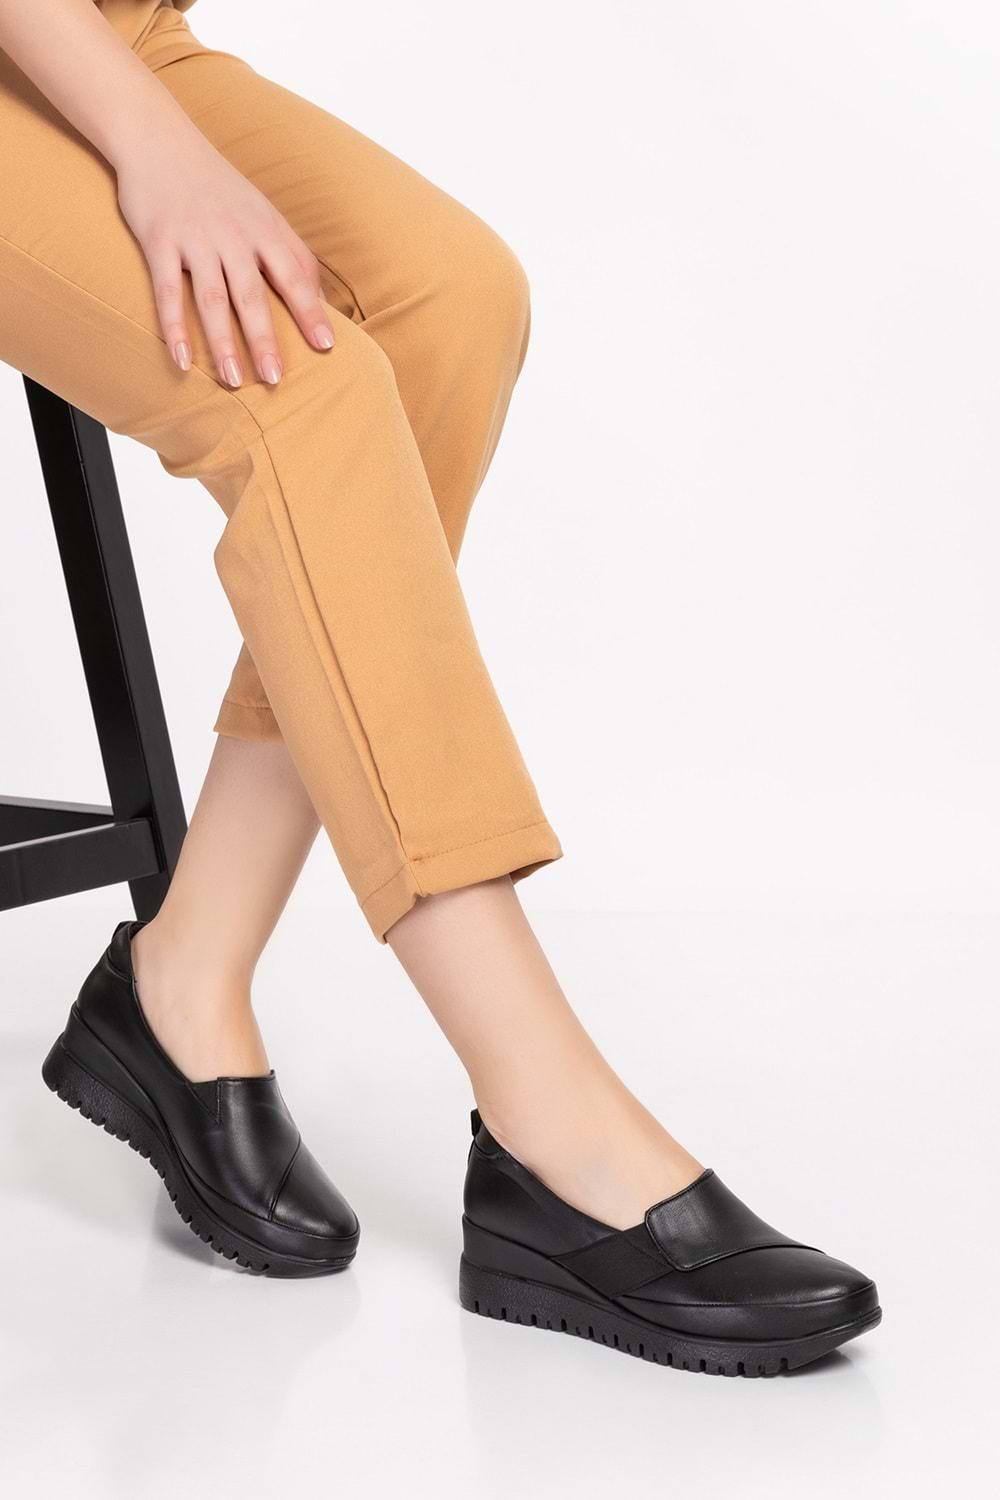 Gondol Kadın Hakiki Deri Anatomik Taban Dolgu Topuklu Günlük Ayakkabı pyt.6205 - Siyah - 36